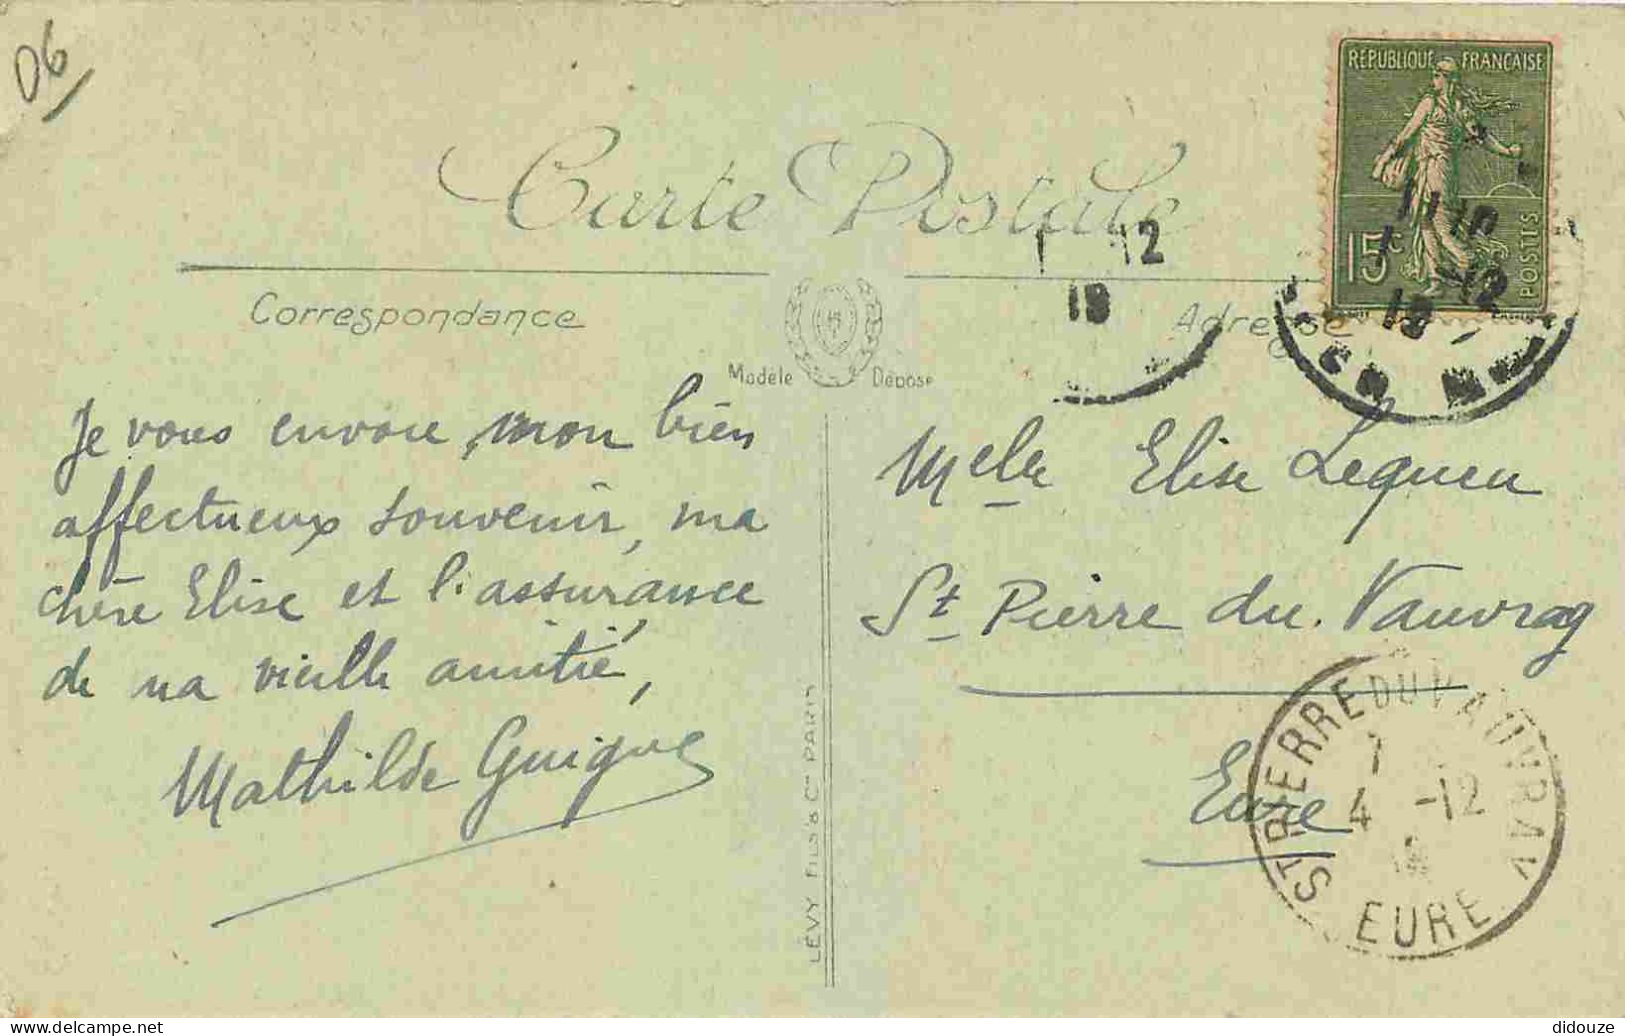 06 - Cagnes - Rue Saint Sébastien - Animée - Chèvres - Enfants - CPA - Oblitération Ronde De 1918 - Voir Scans Recto-Ver - Cagnes-sur-Mer